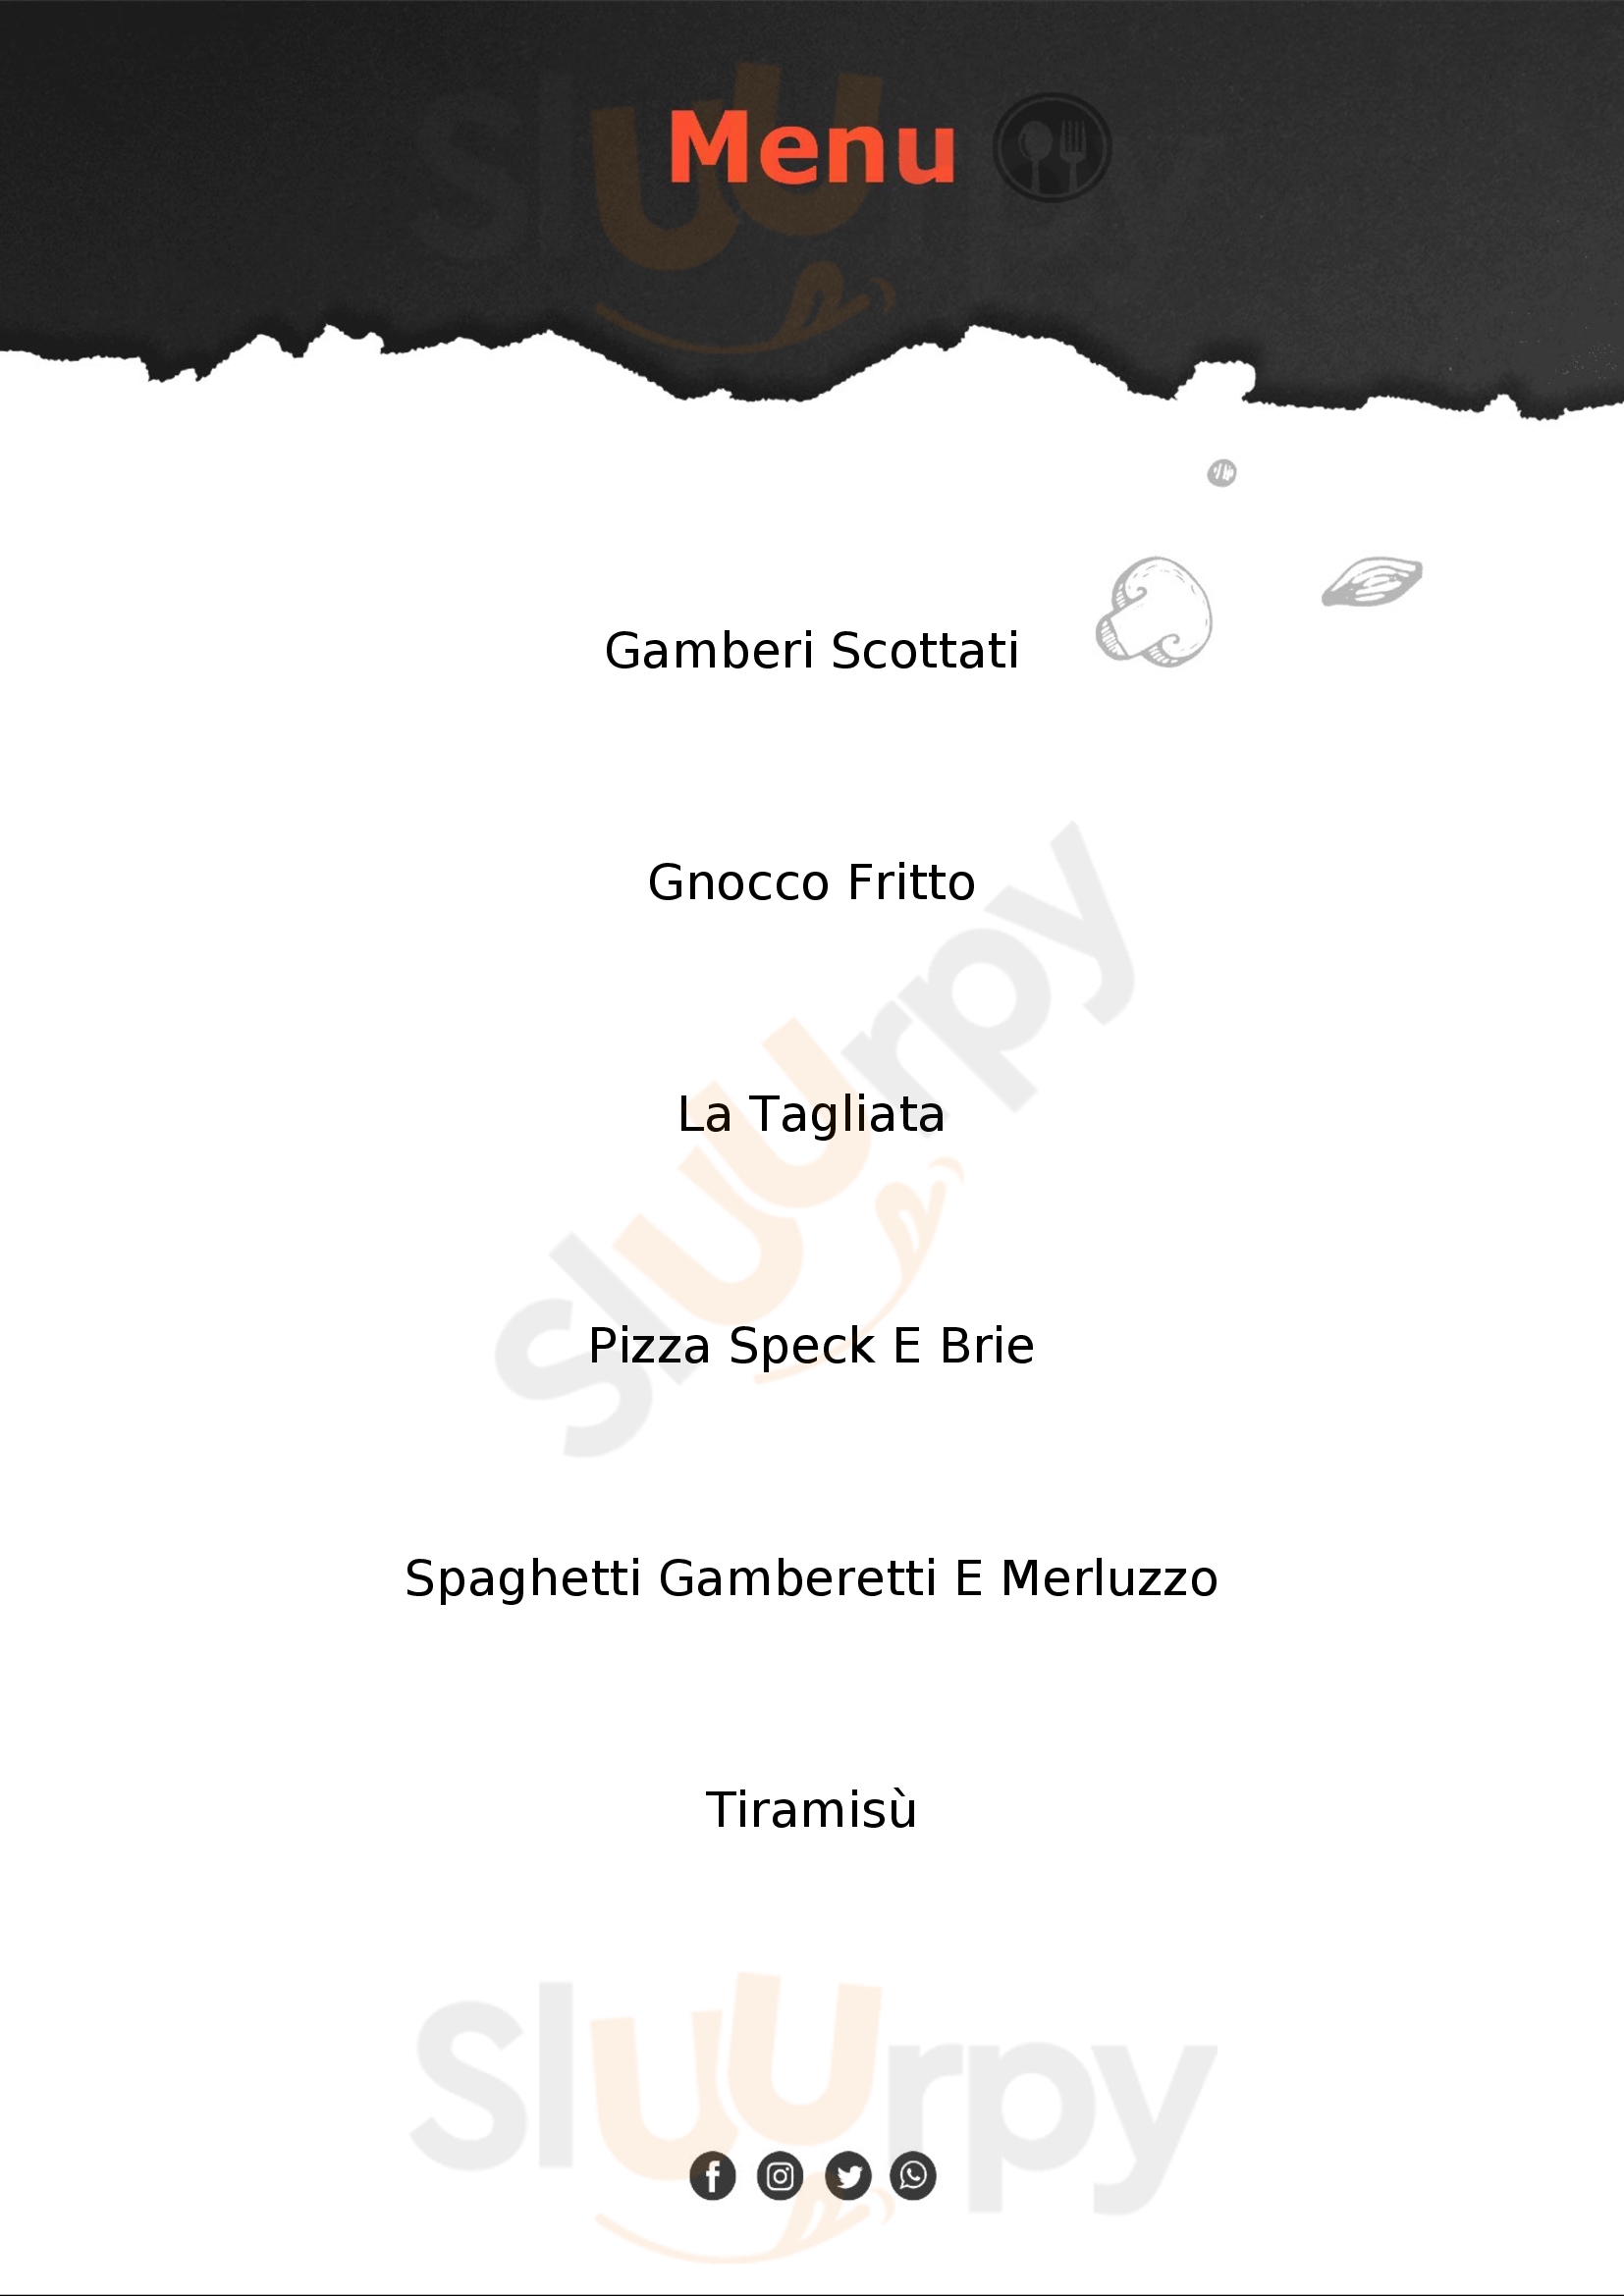 Il Ristoro Ristorante Pizzeria Casalpusterlengo menù 1 pagina